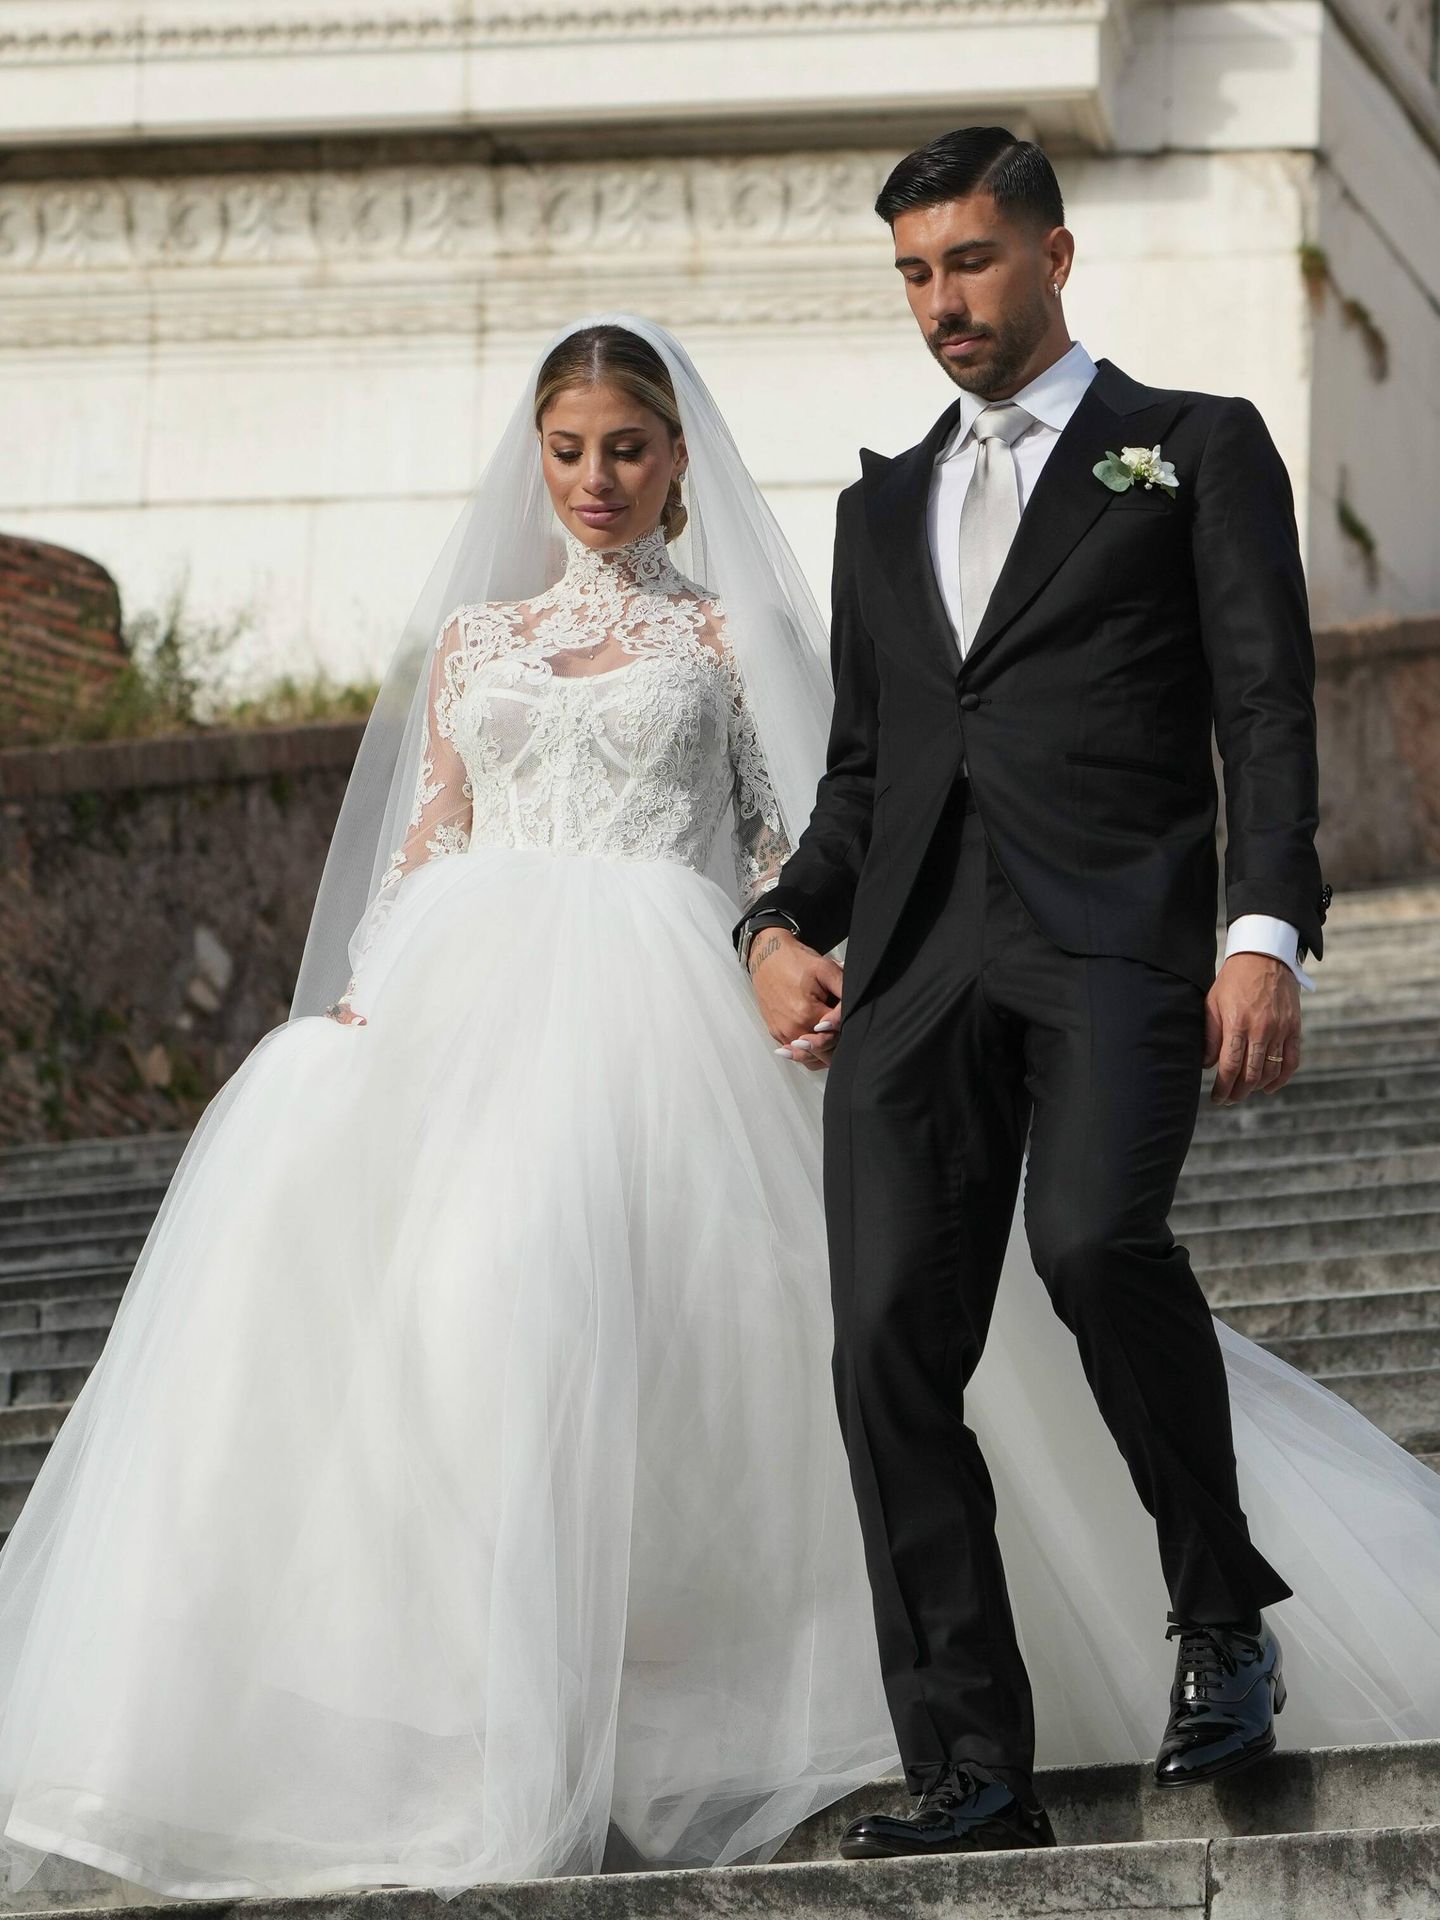 La boda de Chiara Nasti, la influencer italiana que ha dado el 'sí, quiero' al futbolista Mattia Zaccagni. (Cordon Press)